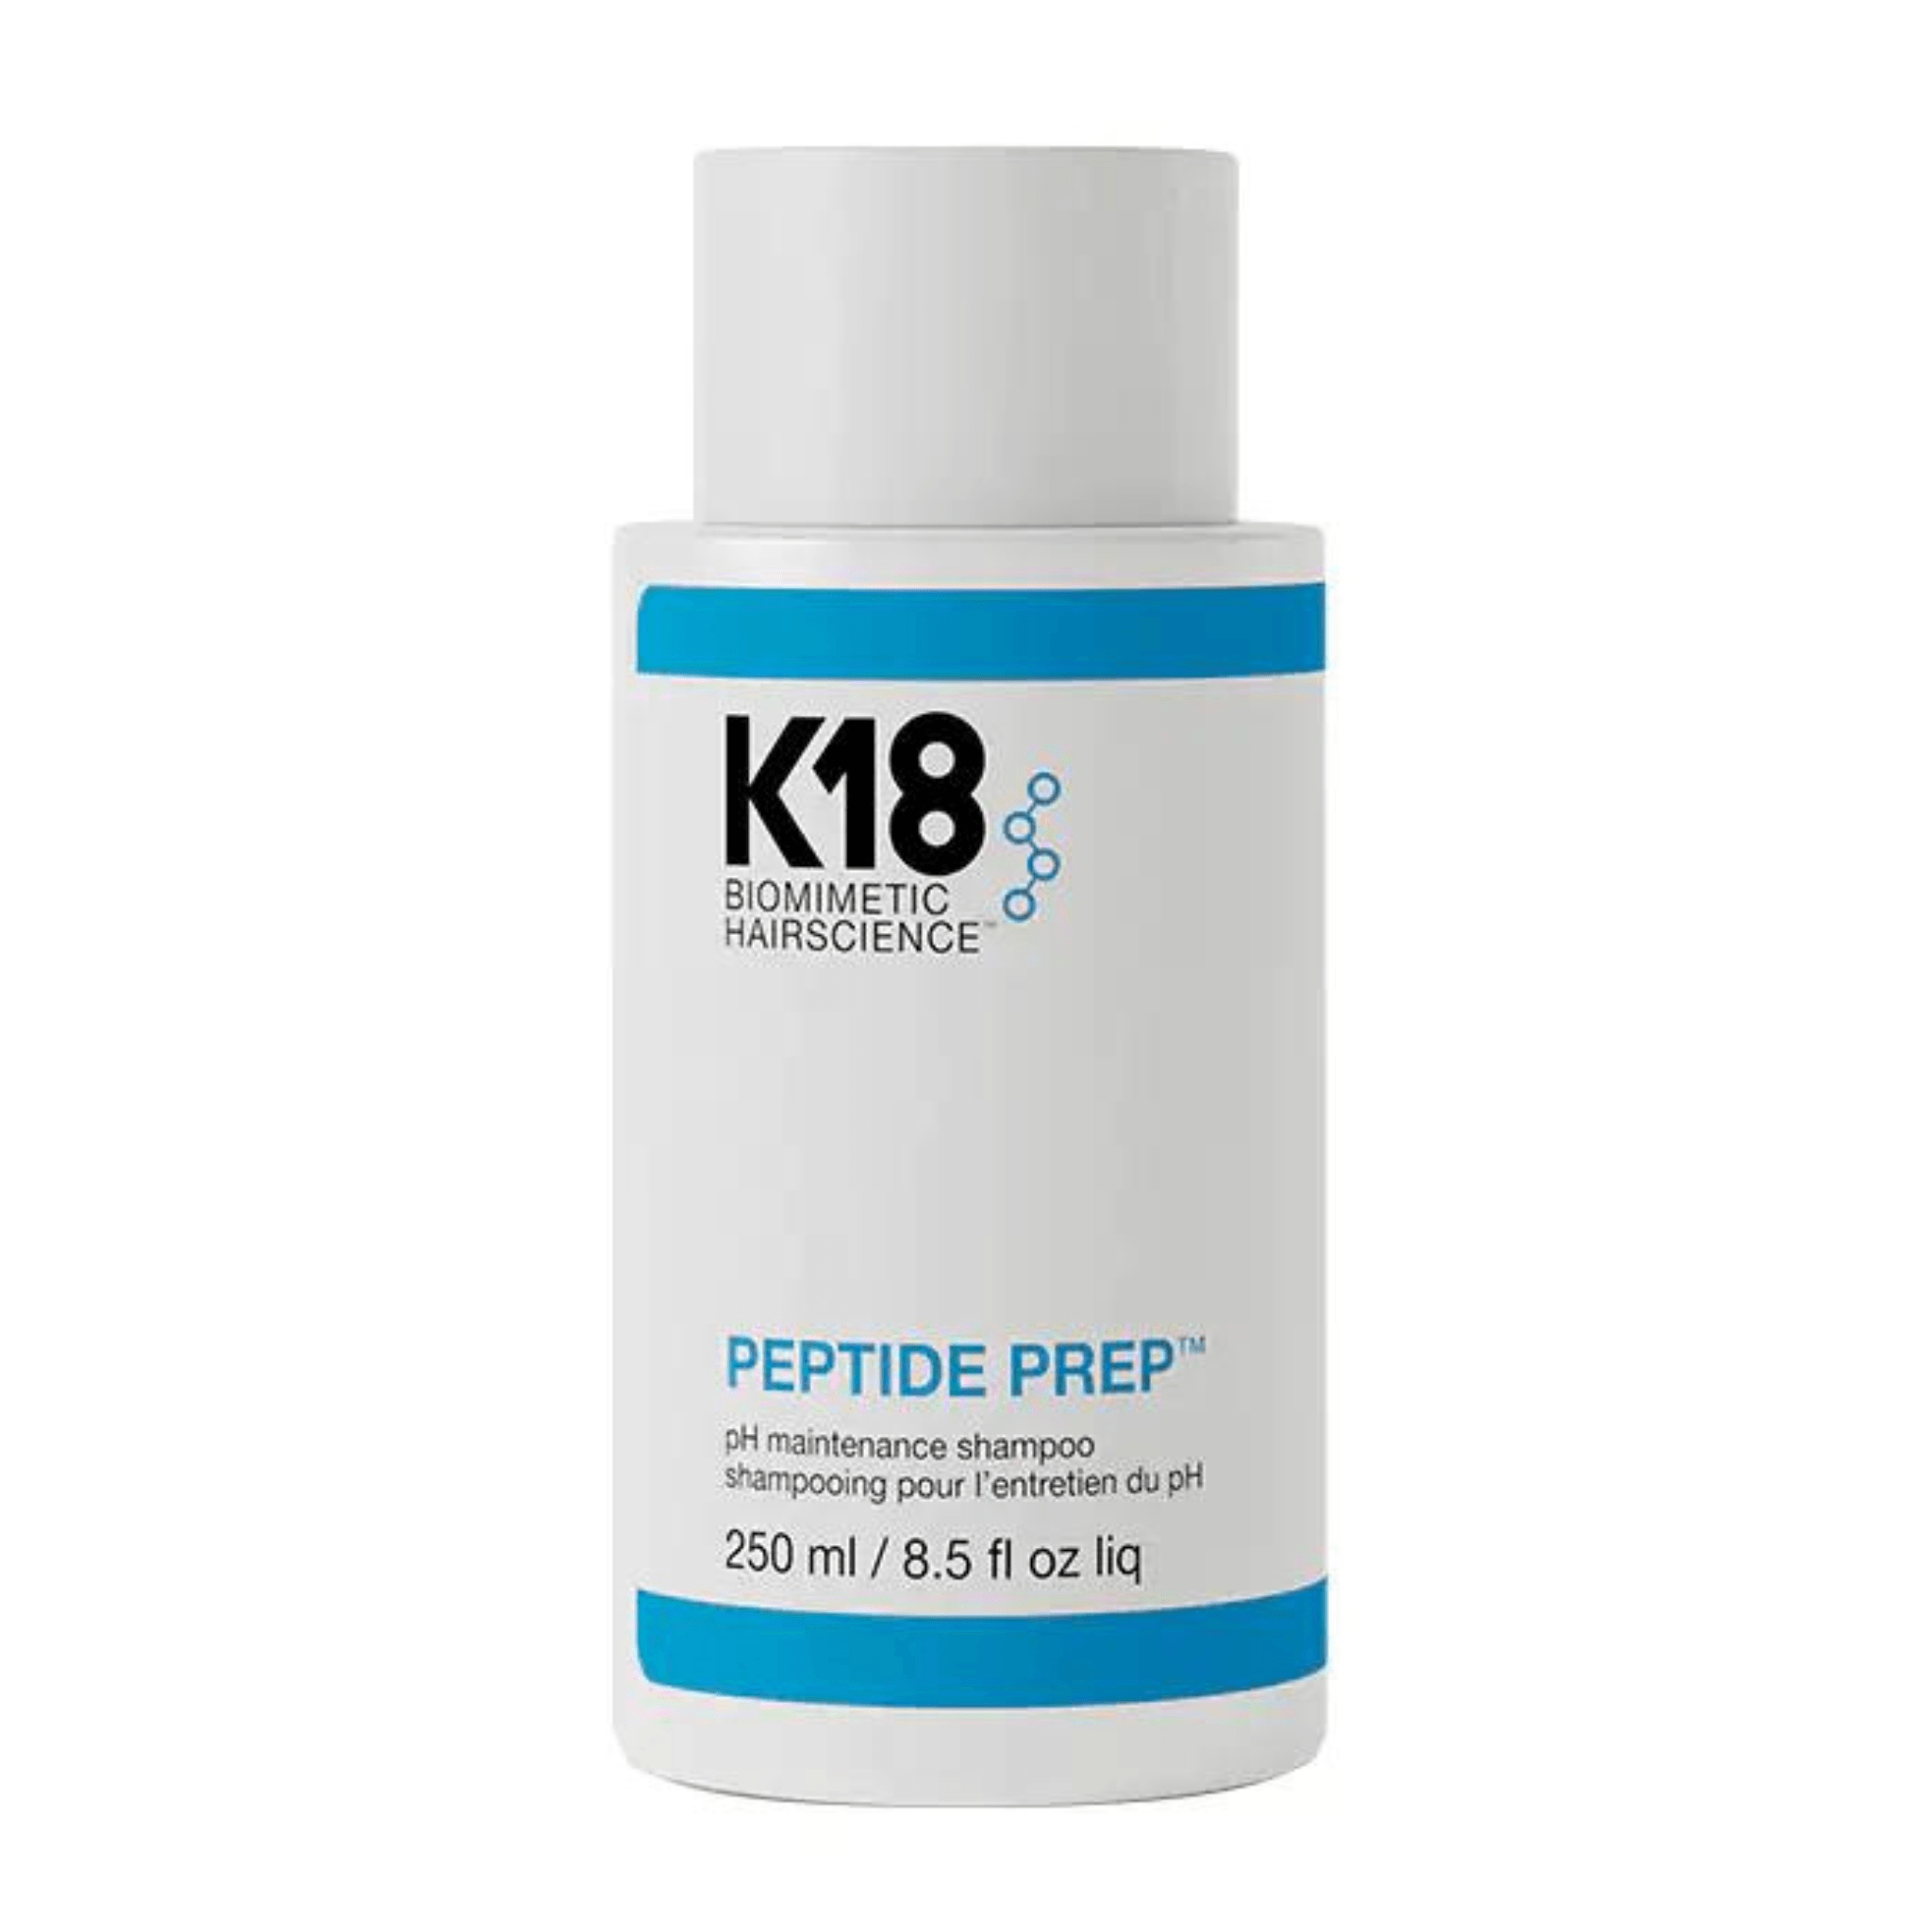 K18. Shampoing pour le Maintien du pH Peptide Prep - 250 ml - Concept C. Shop